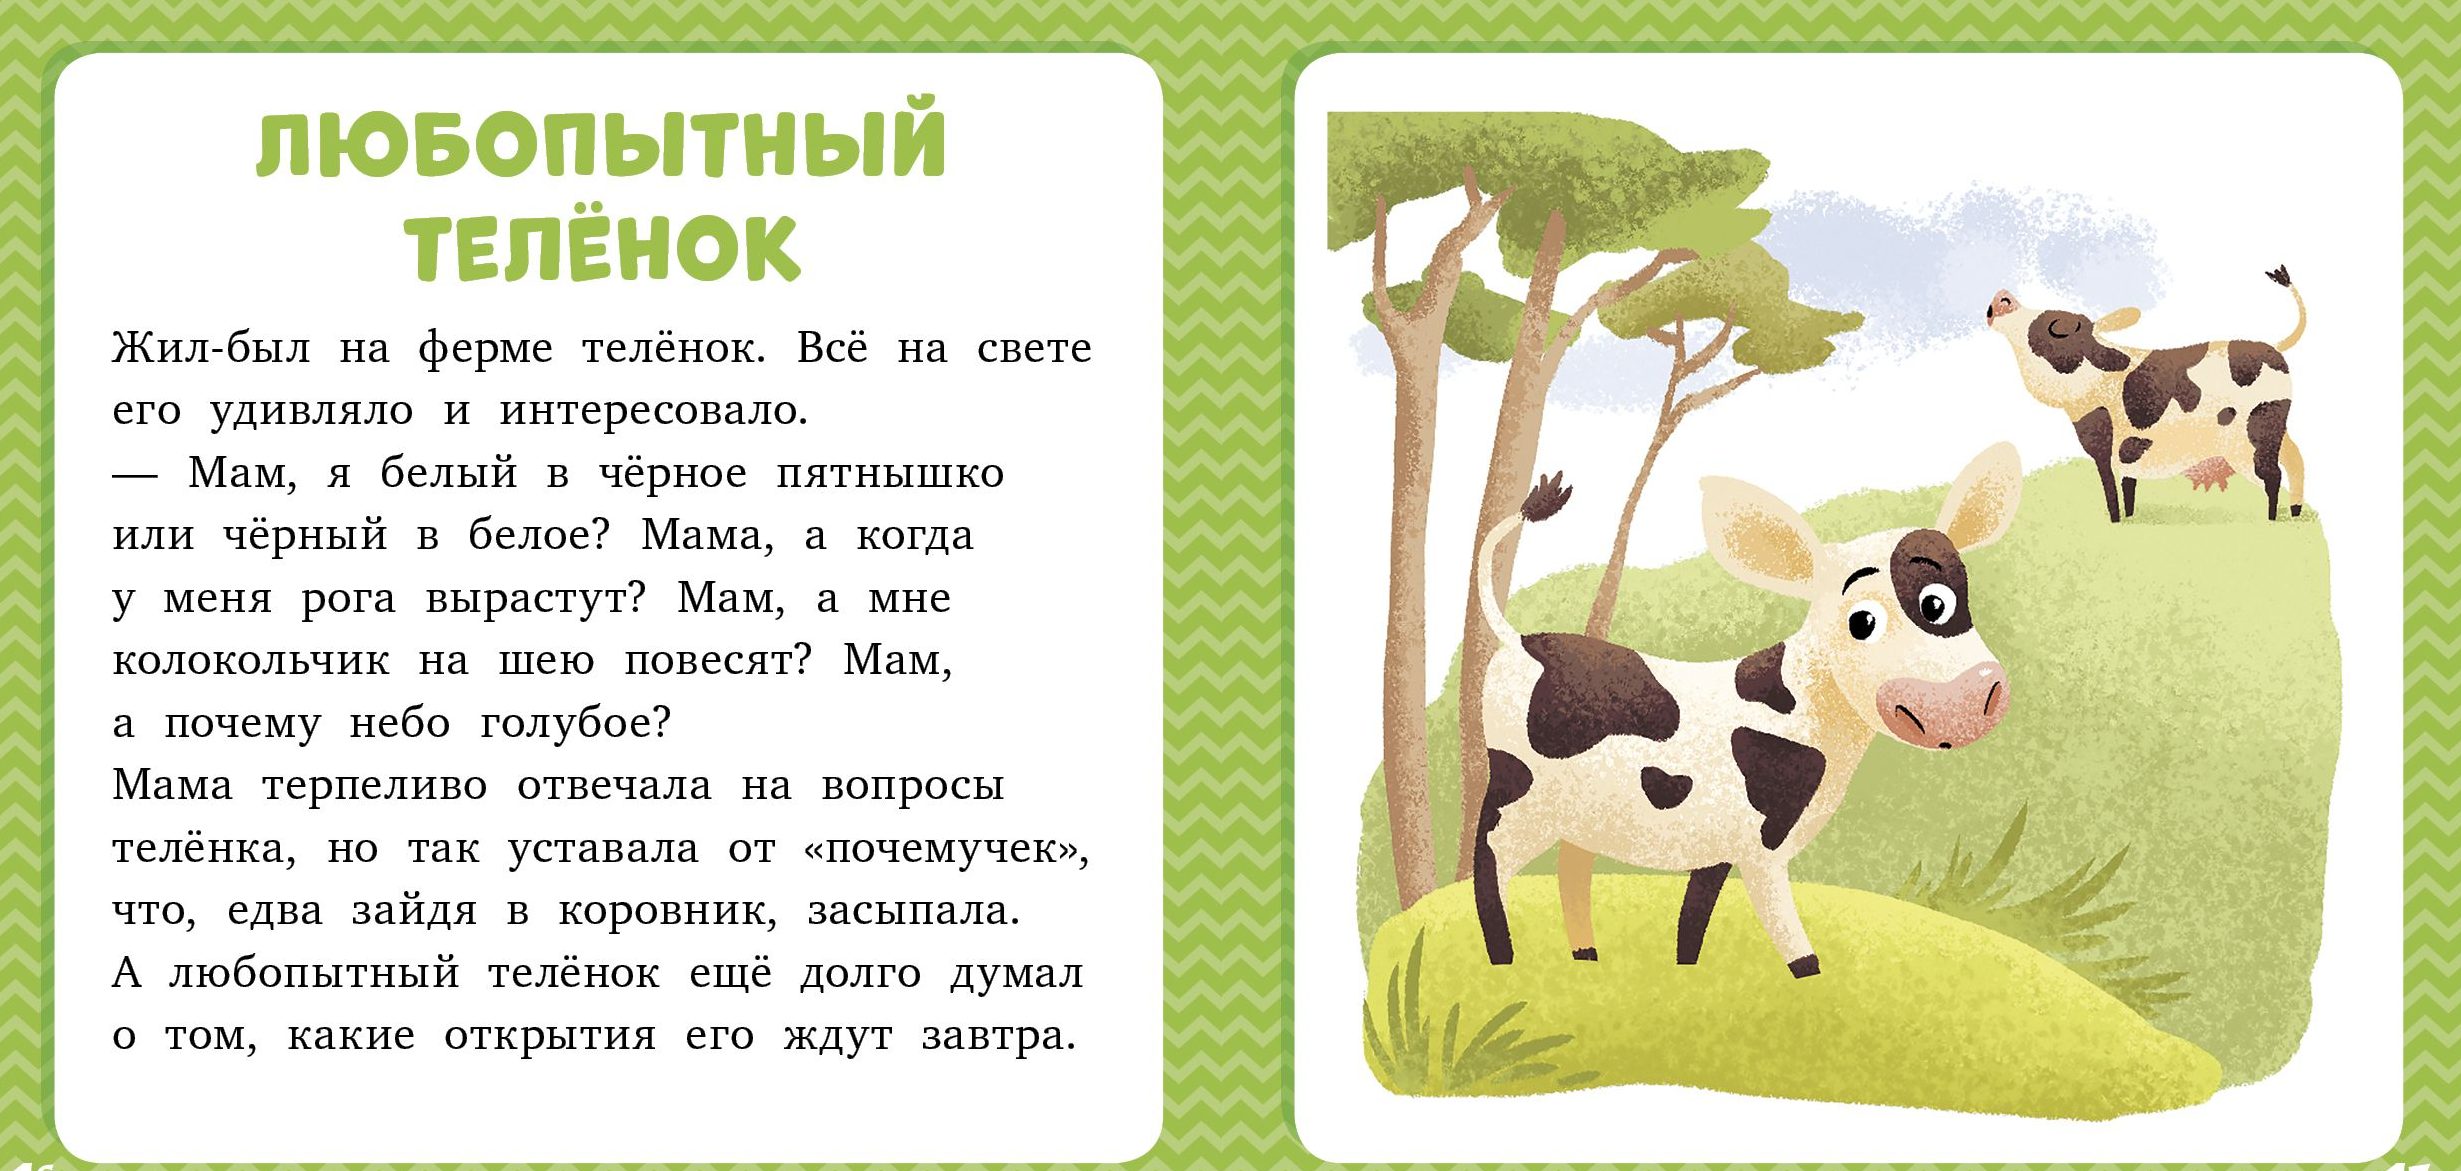 Небольшой рассказ короткий. Лида Данилова 17 историй и сказок для первого чтения. Короткие сказки для детей. Детские рассказы короткие. Короткие рассказы для малышей.